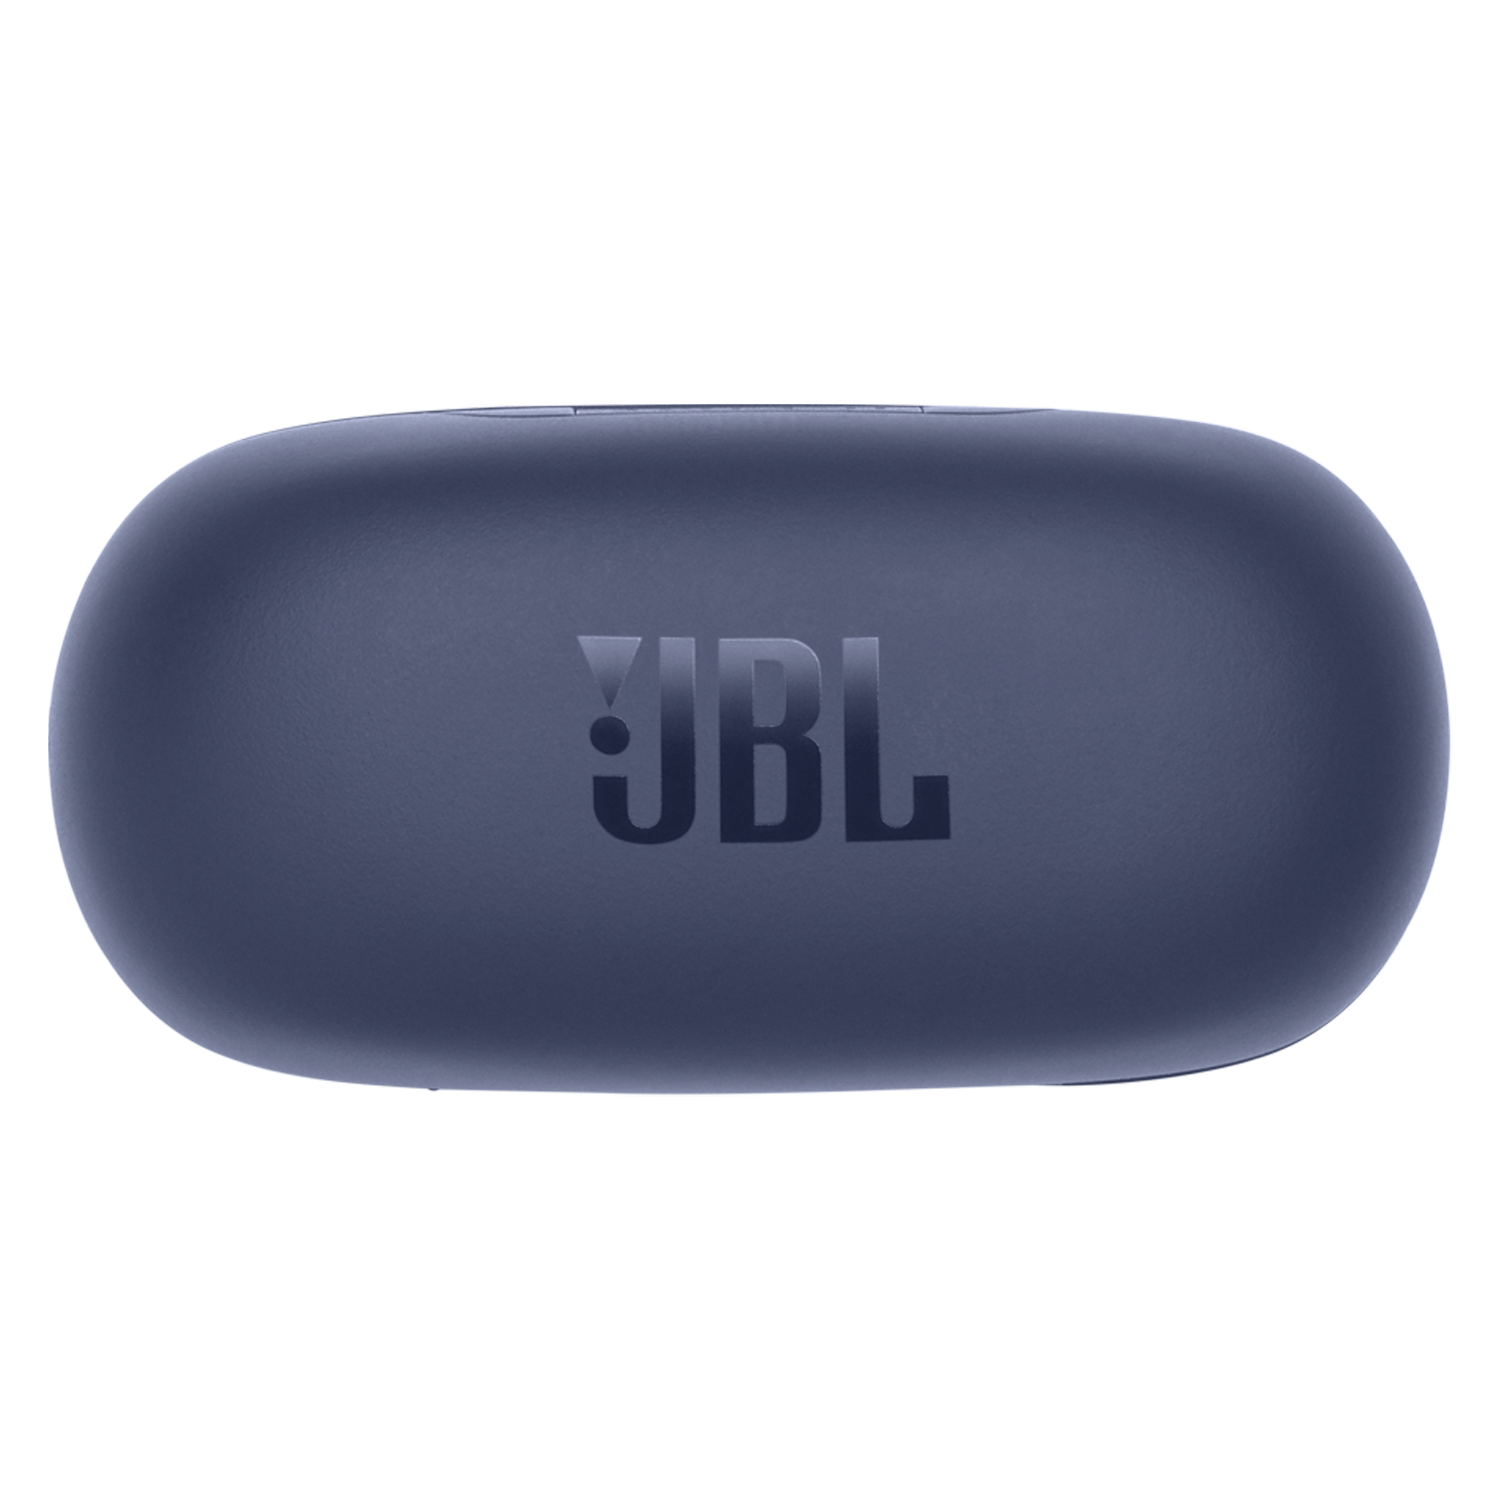 Fone de Ouvido JBL Live Free NC+TWS Bluetooth - Azul